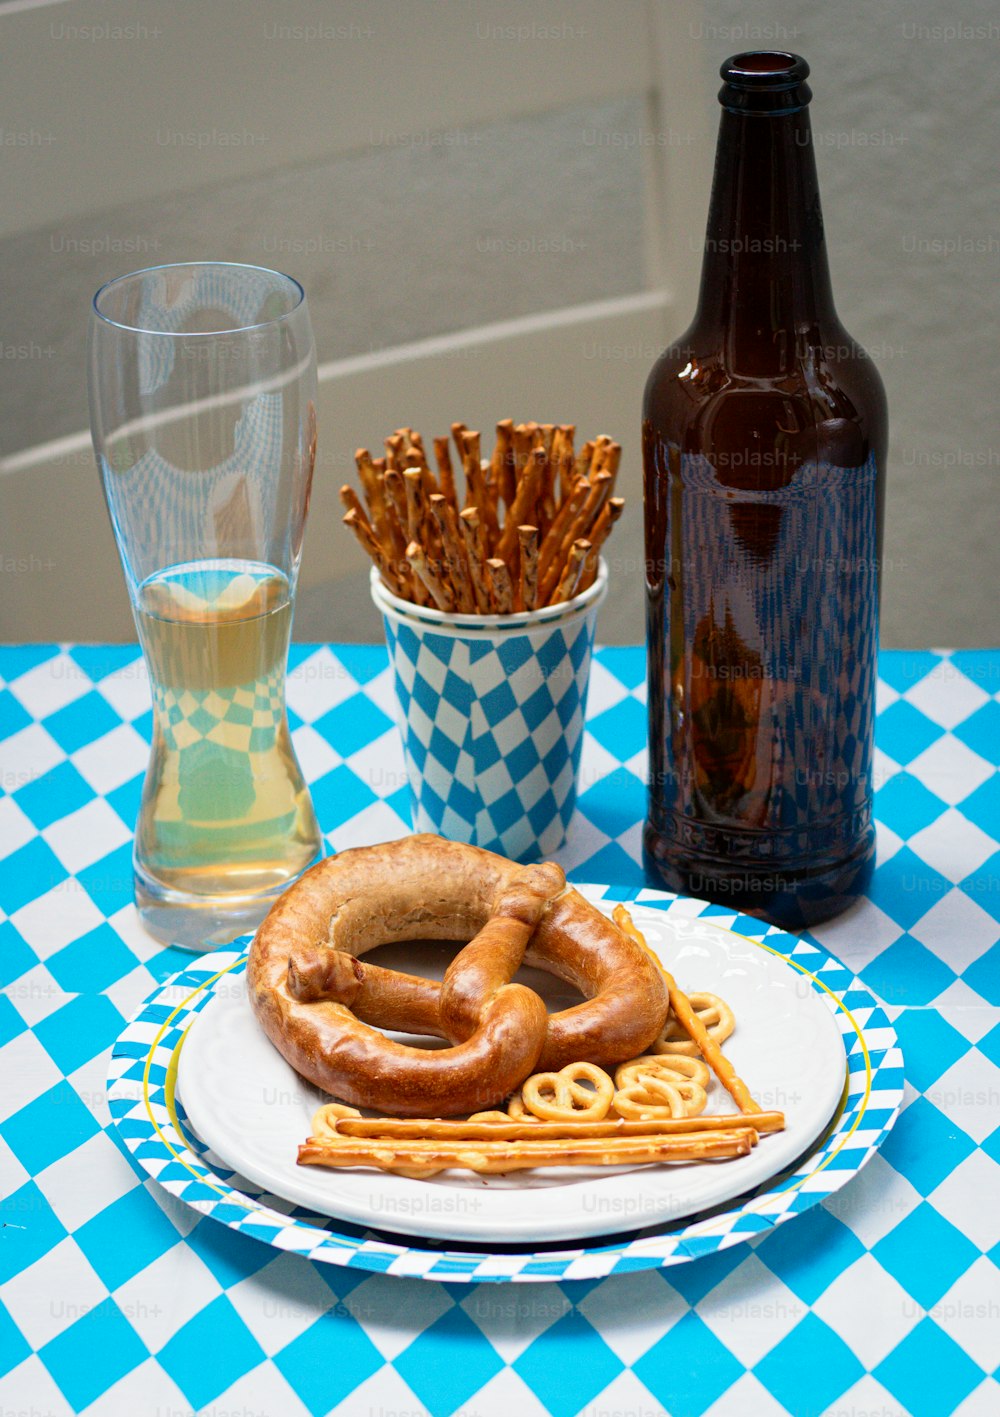 ein Teller mit einer Brezel darauf neben einem Glas Bier